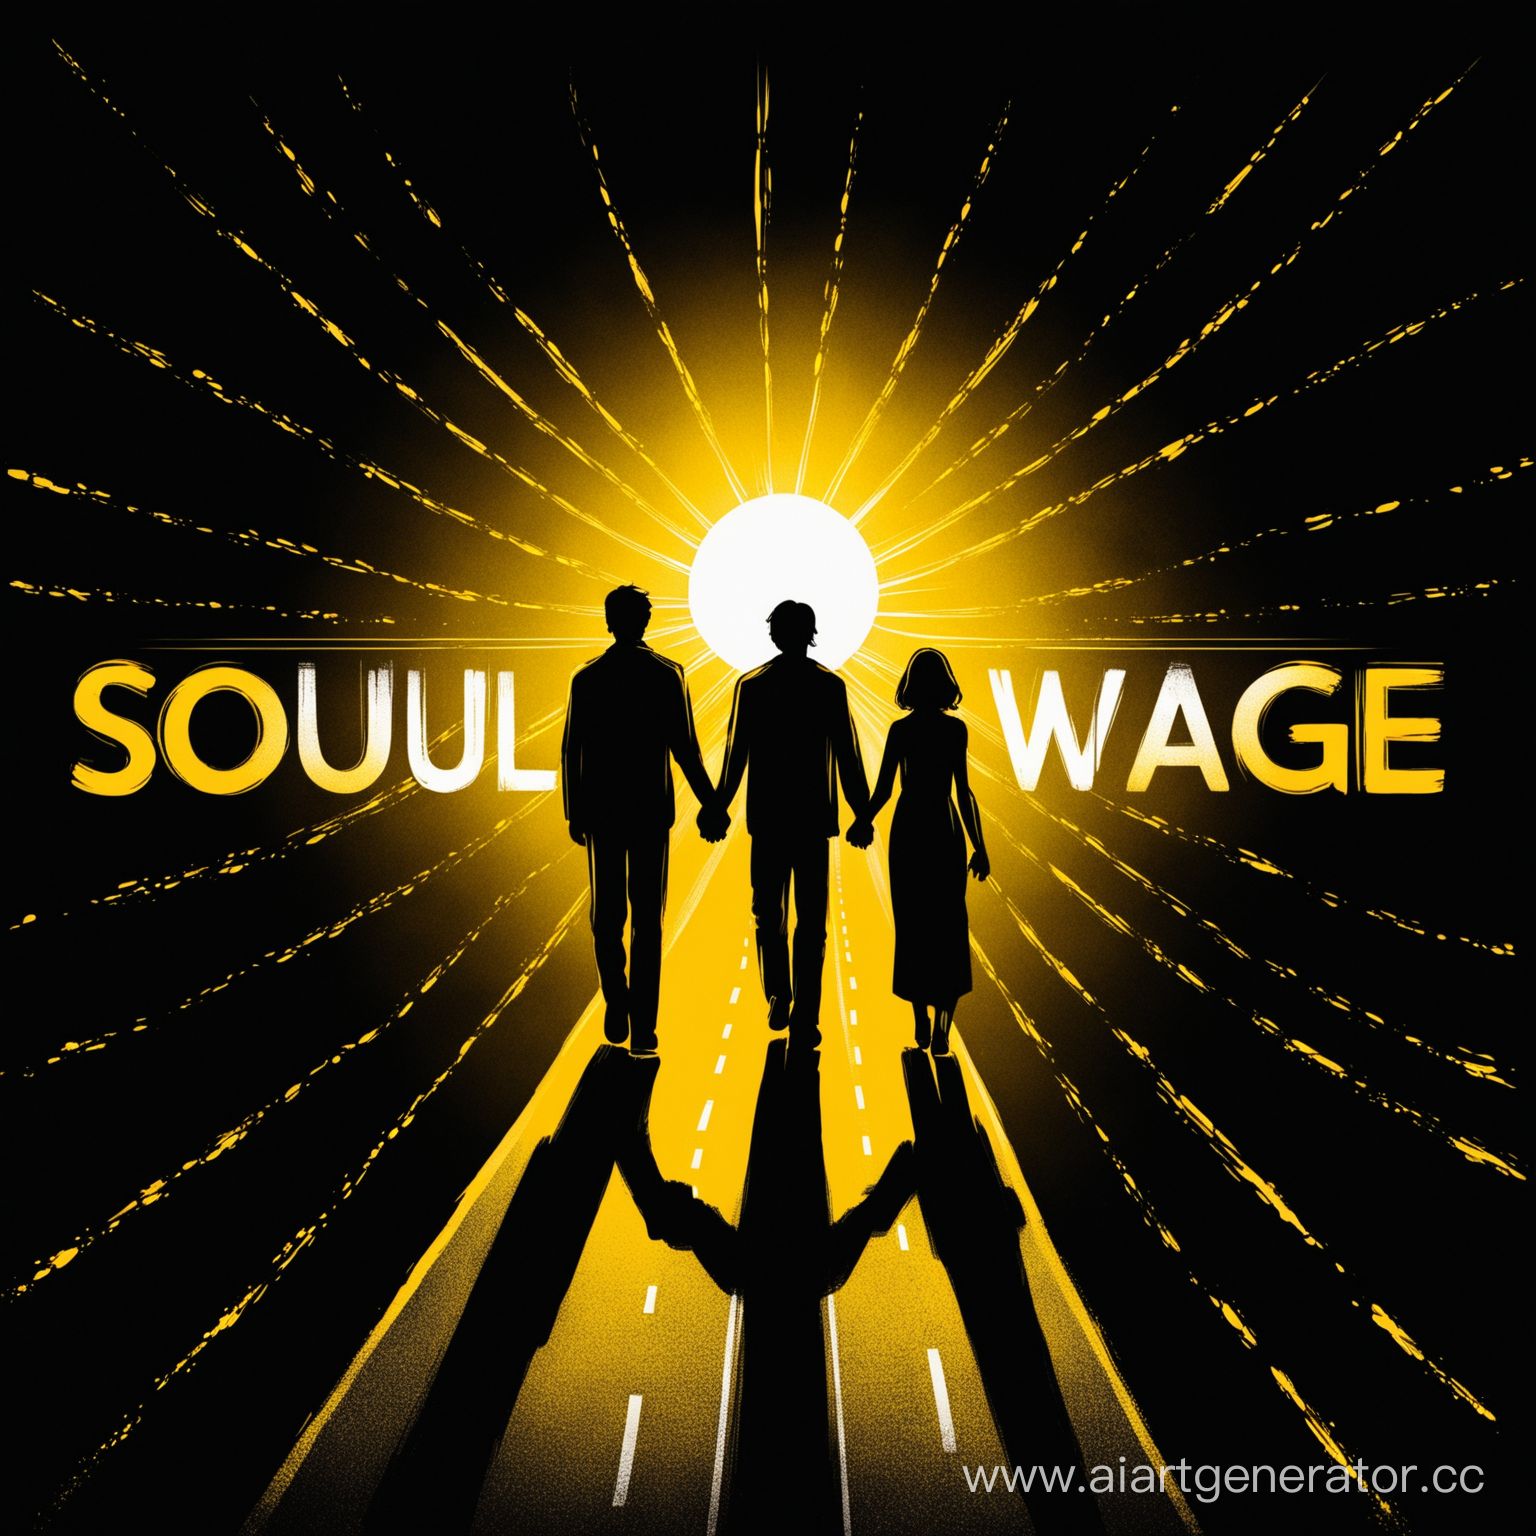 надпись "Soulwage" желтая, черный фон, дорога к солнцу, на дороге два белых силуэта людей, люди держаться за руки